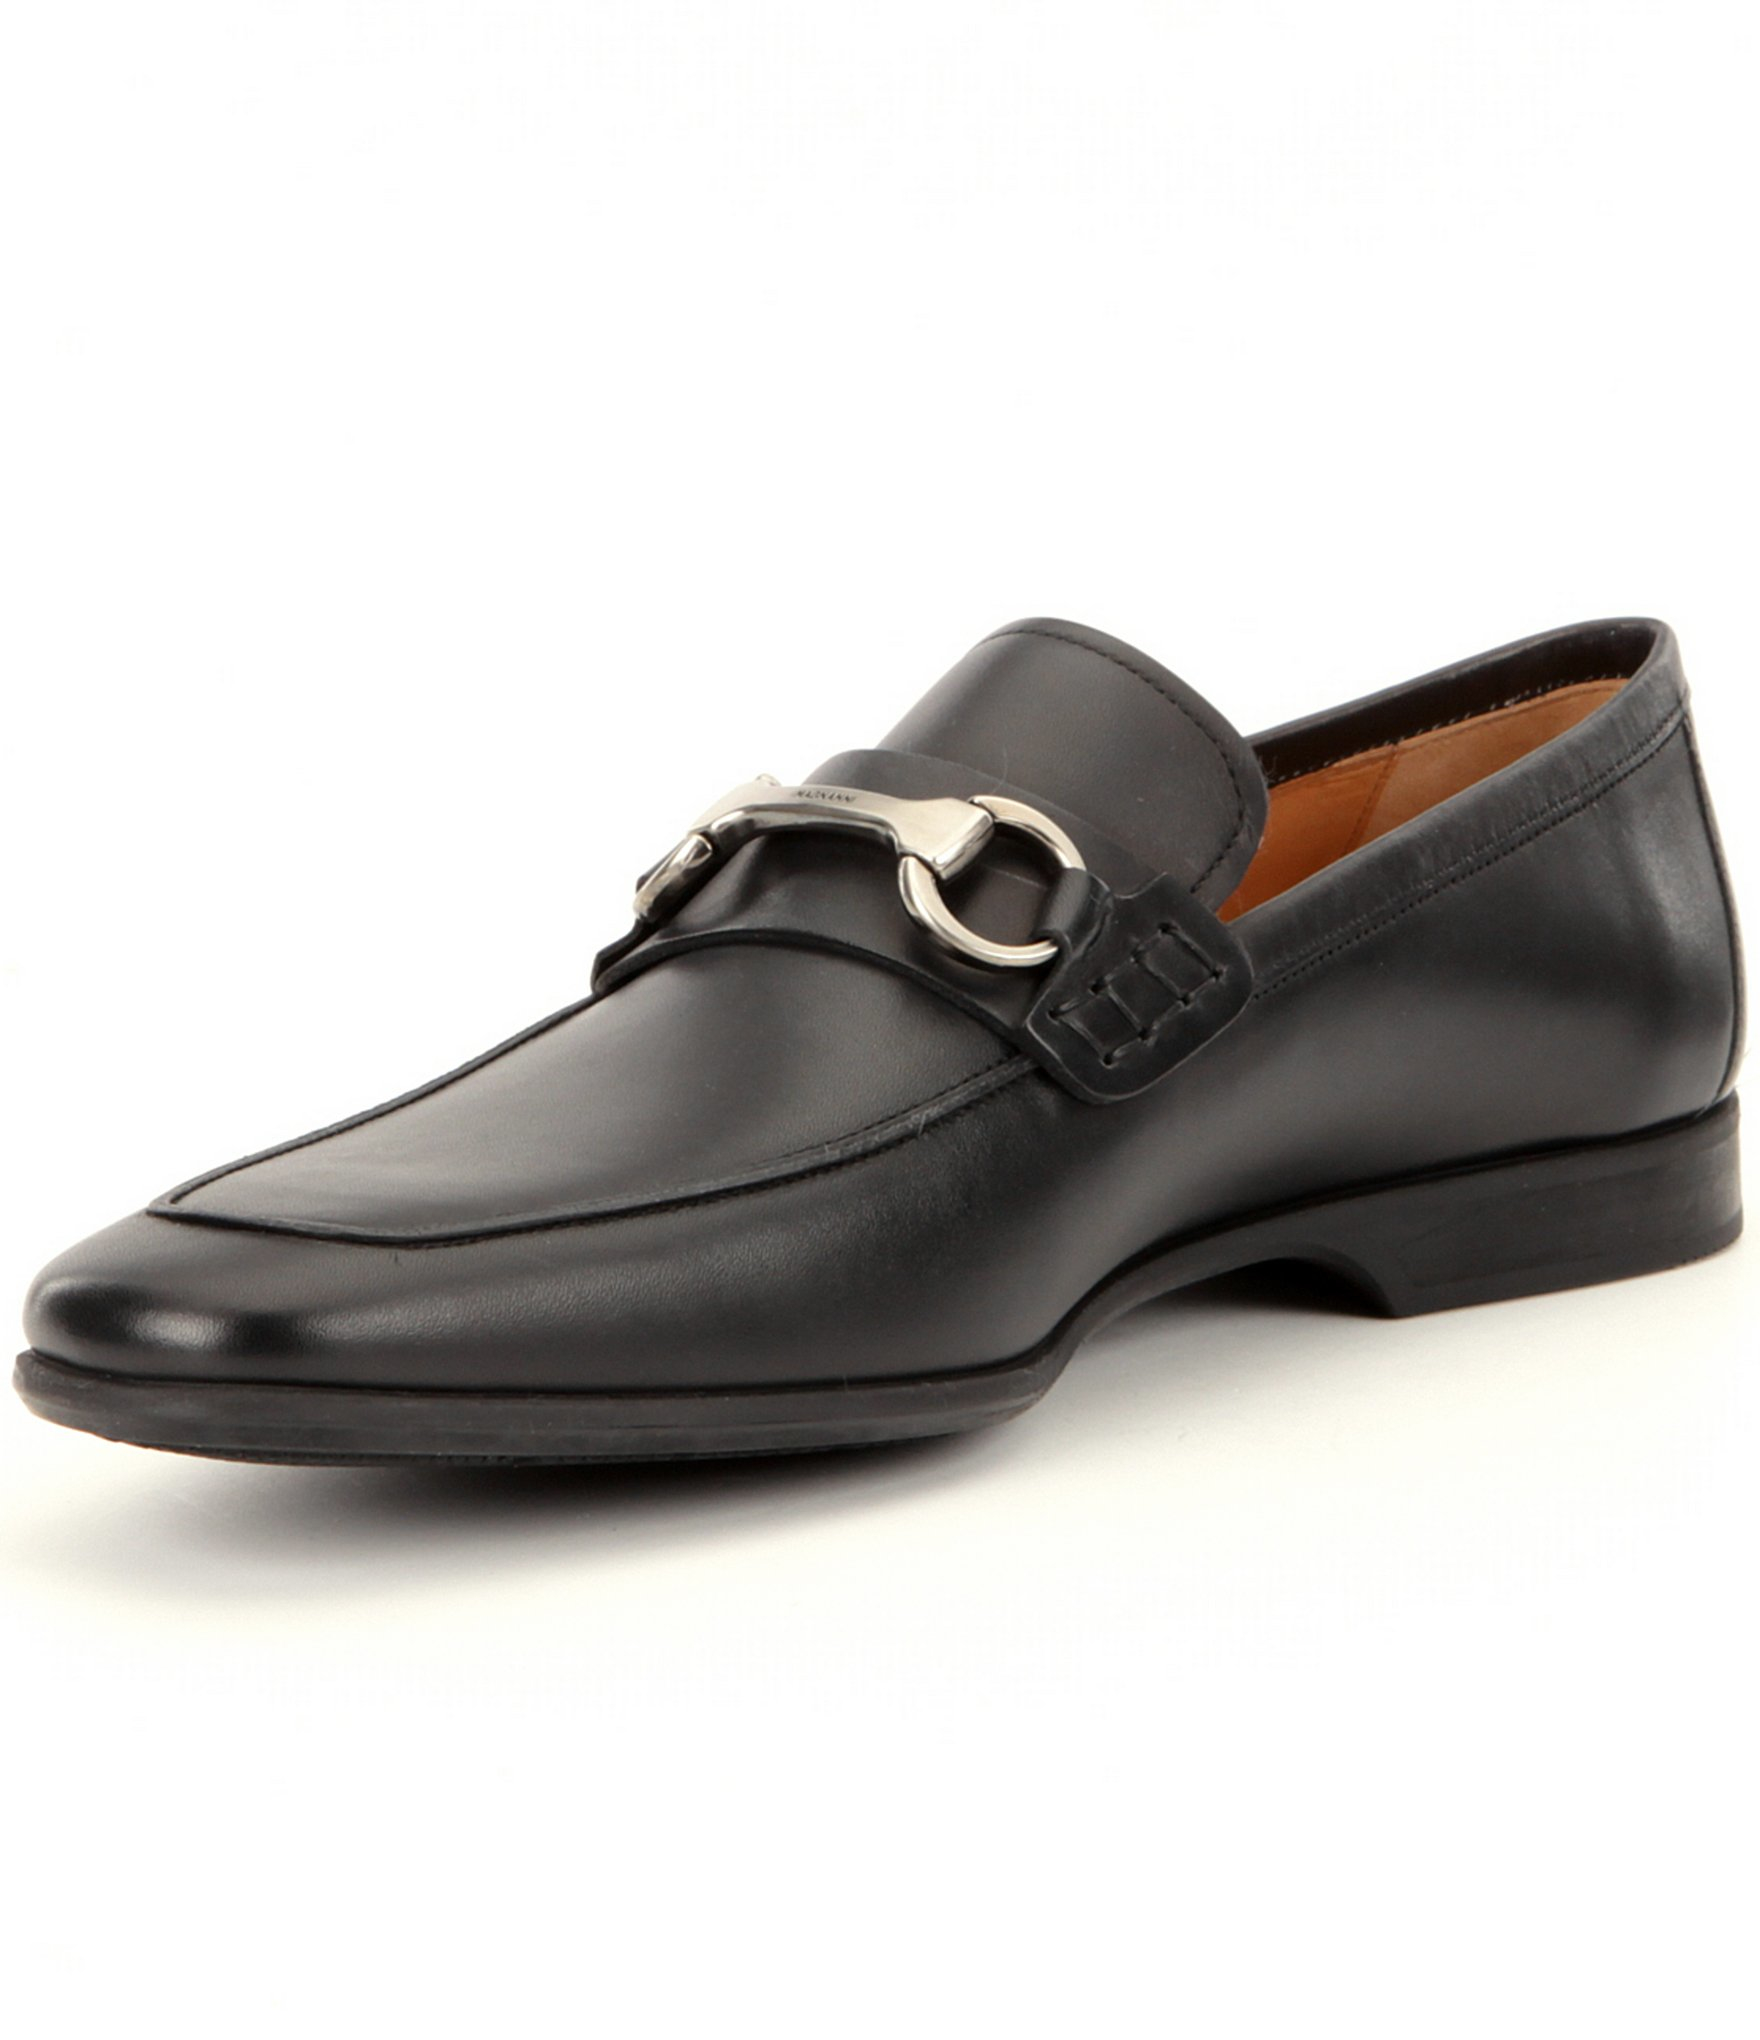 Lyst - Saks Fifth Avenue Men ́s Rafa 2 Leather Moc-toe Dress Shoes in ...